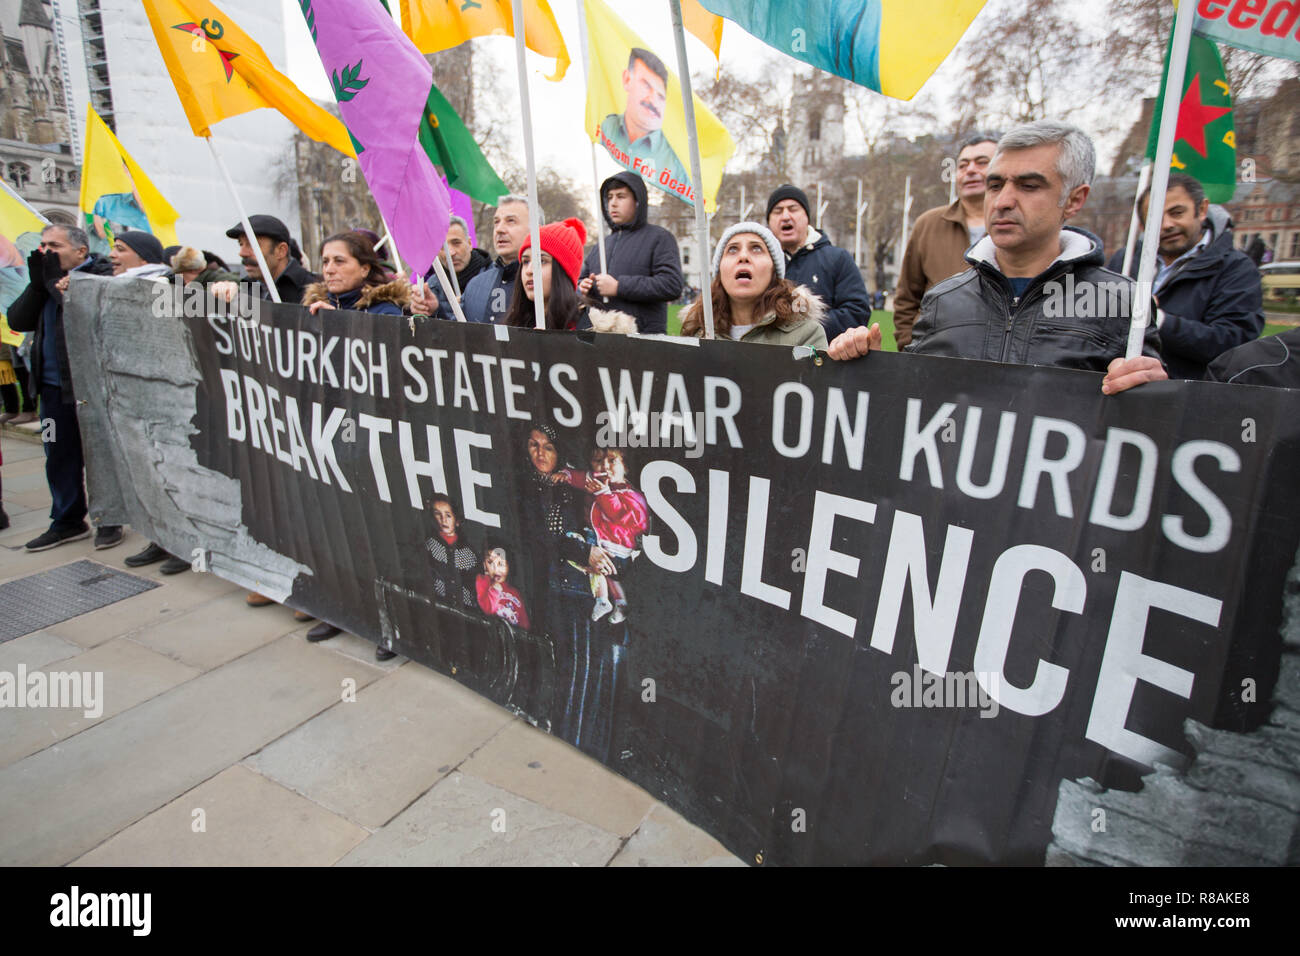 Londres, Royaume-Uni. 14 décembre 2018. Manifestants devant le Parlement kurde montrer leur solidarité avec ceux qui sont en grève de la faim comme Leyla Guven crédit : George Cracknell Wright/Alamy Live News Banque D'Images